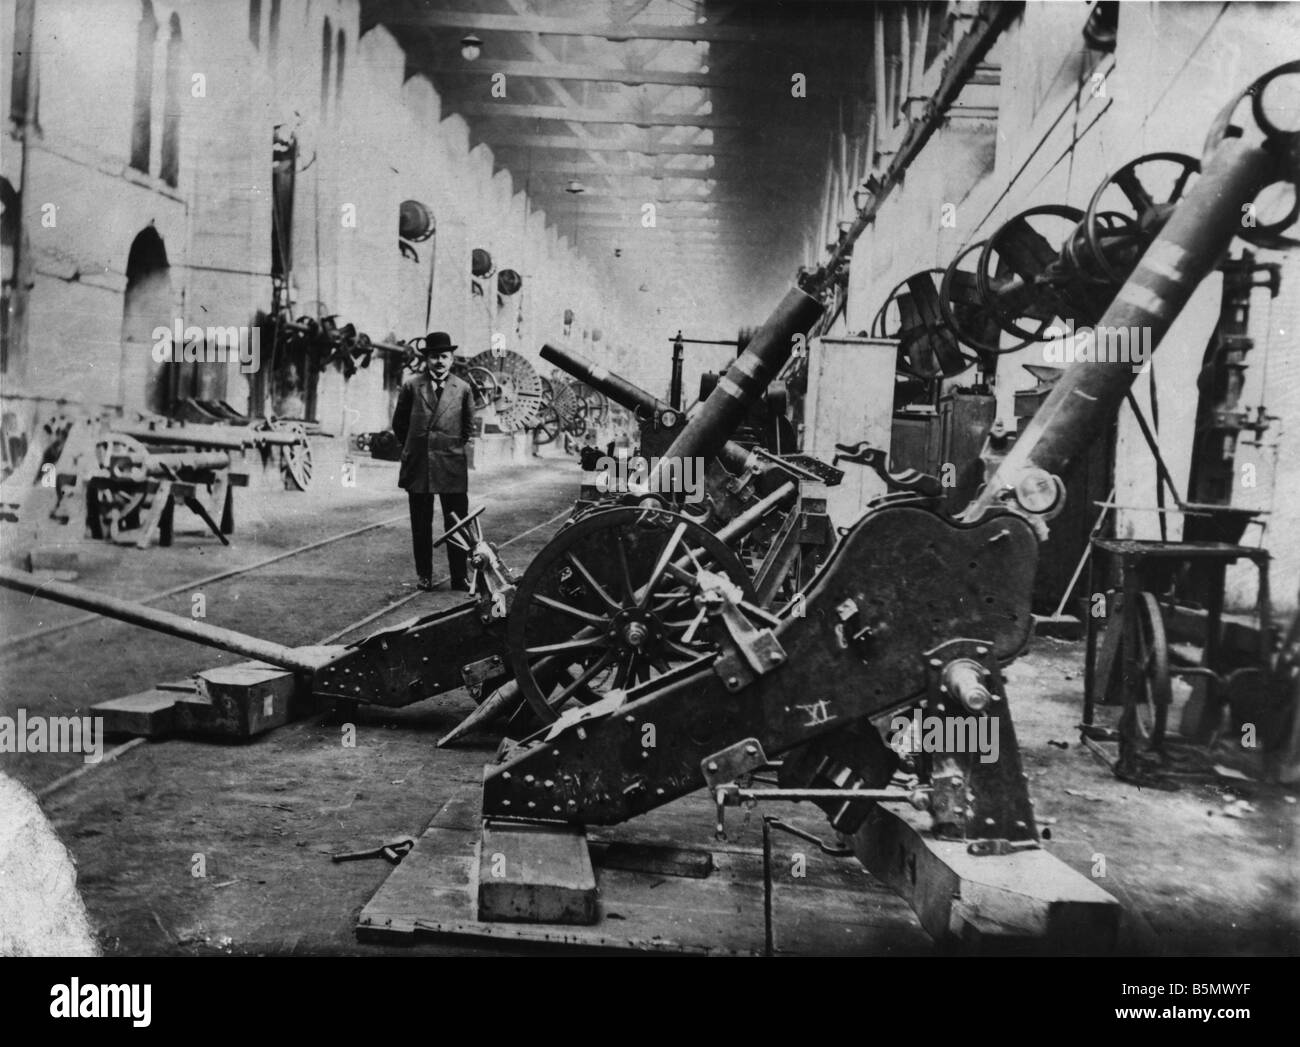 9TK 1916 0 0 A1 4 fábricas de armas a Turquía Otoño 1916 Historia de Turquía Guerra Mundial 1 armas y municiones de cañón fábricas estab Foto de stock